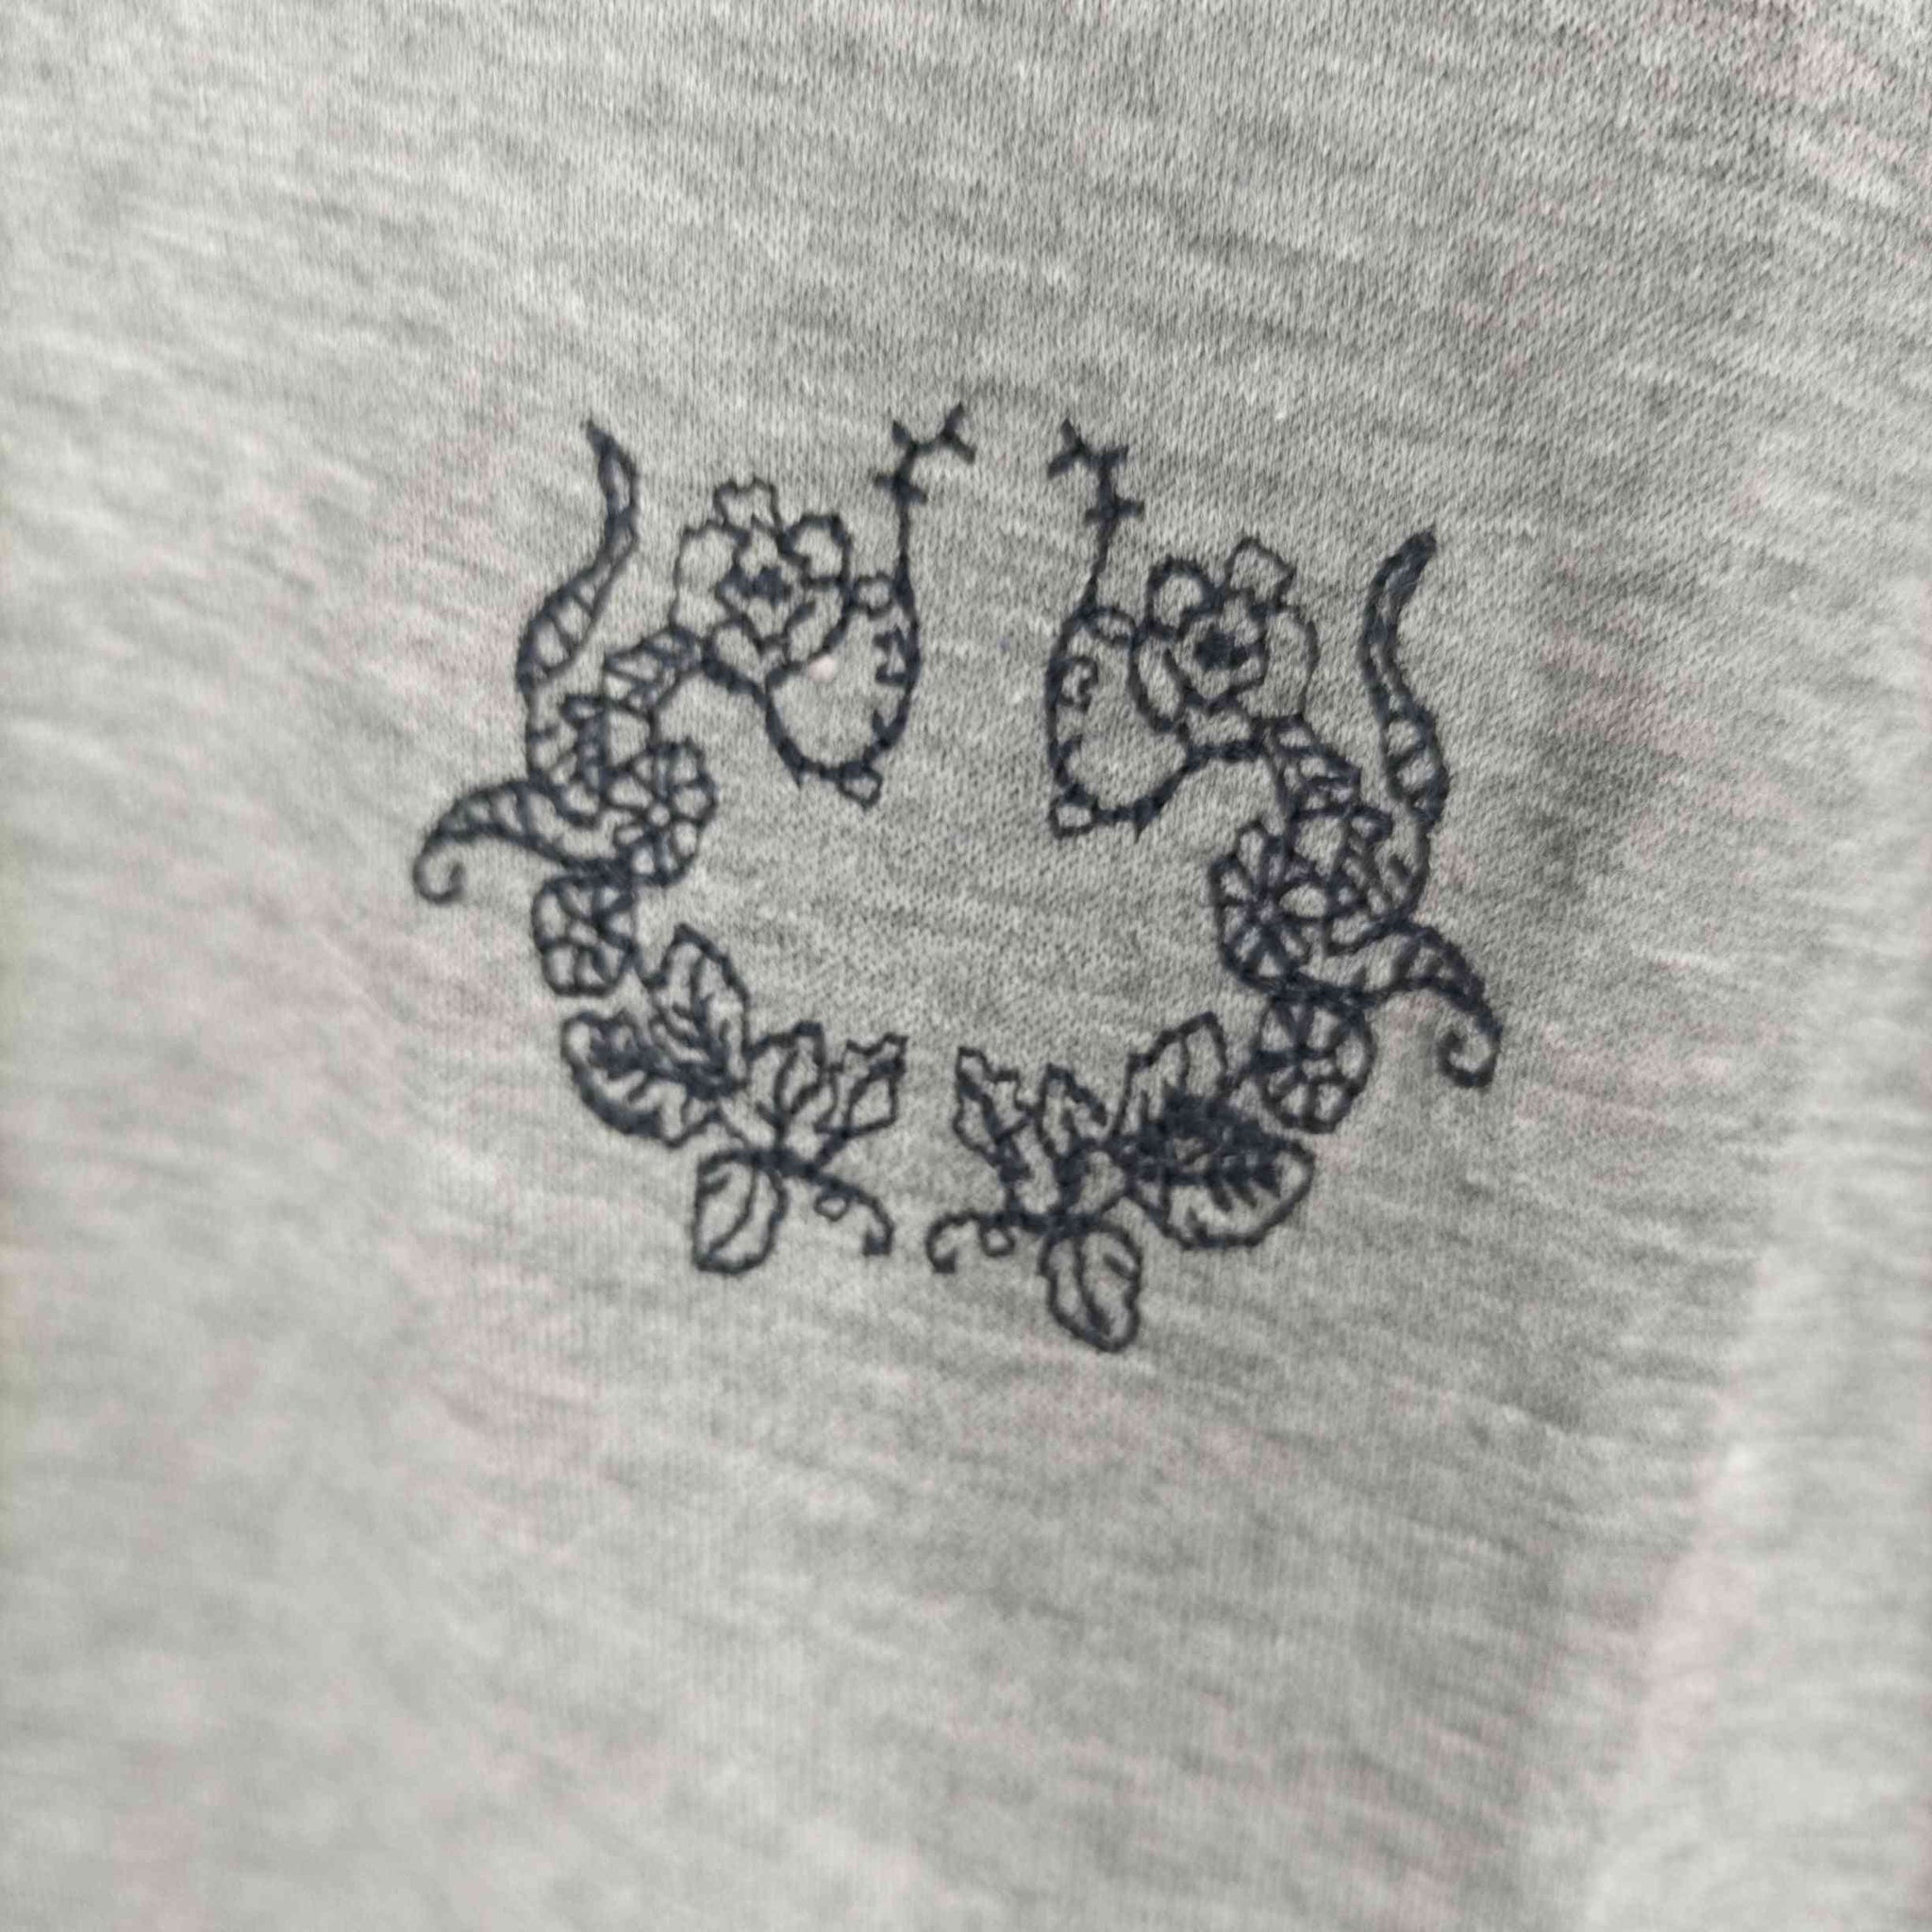 GUILLAUME LEMIEL(ギヨームルミエール)胸刺繍 ポロシャツ